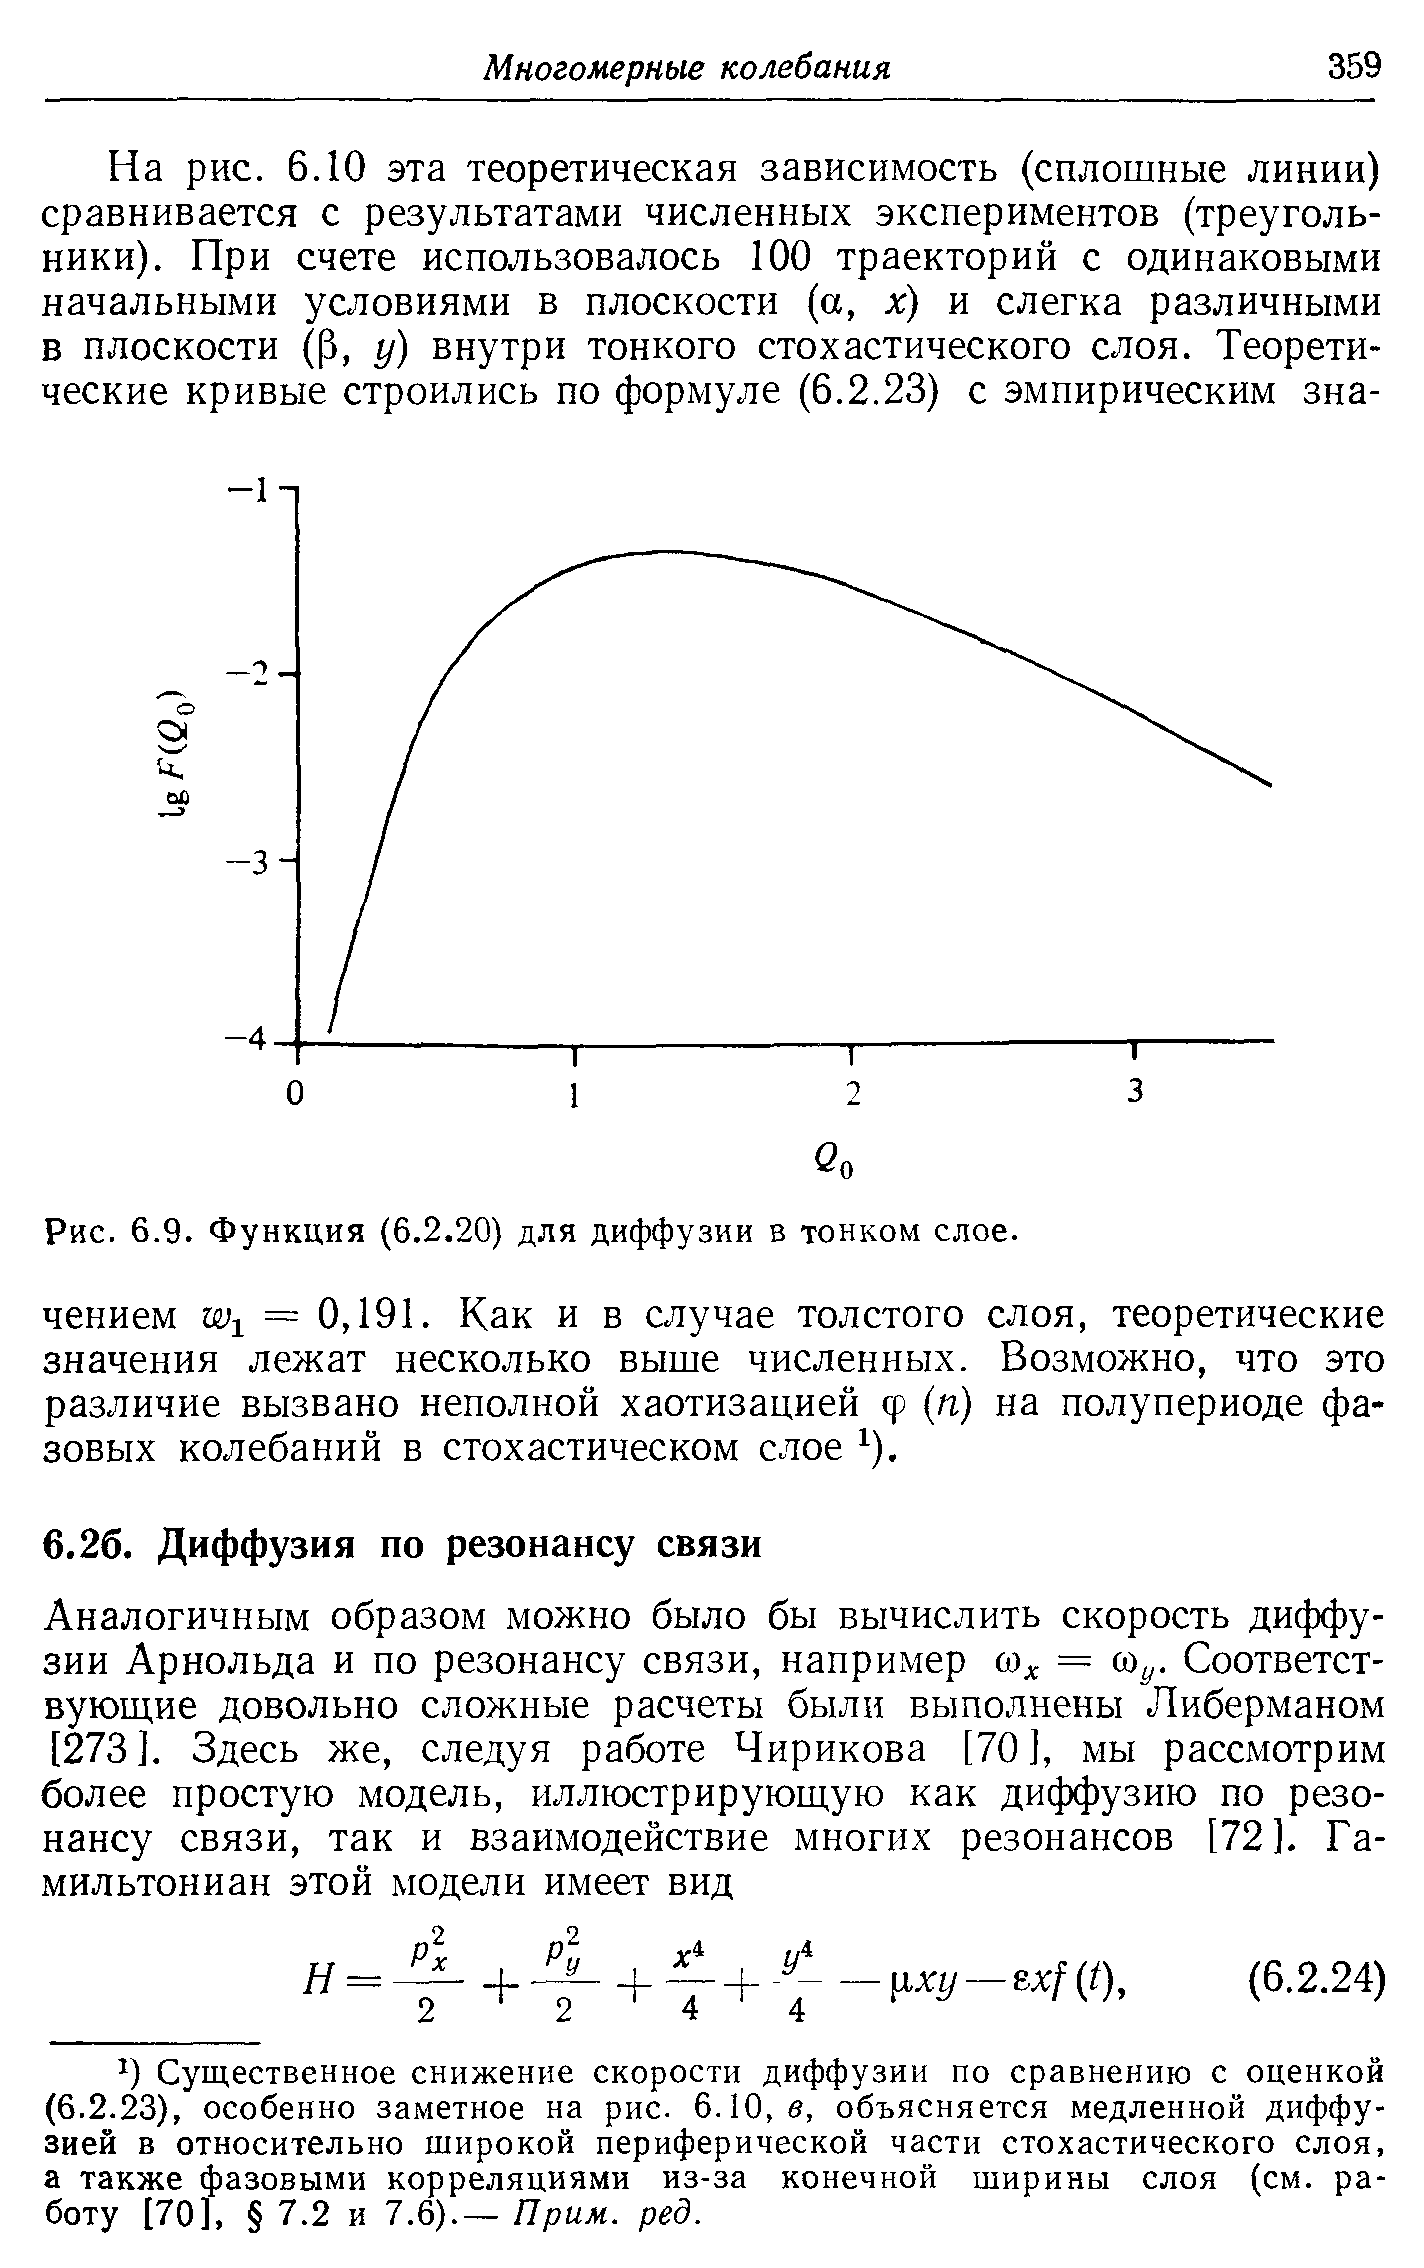 Существенное снижение скорости диффузии по сравнению с оценкой (6.2.23), особенно заметное на рис. 6.10, в, объясняется медленной диффузией в относительно широкой периферической части стохастического слоя, а также фазовыми корреляциями из-за конечной ширины слоя (см. работу [70], 7.2 и 7.6).— Прим. ред.
